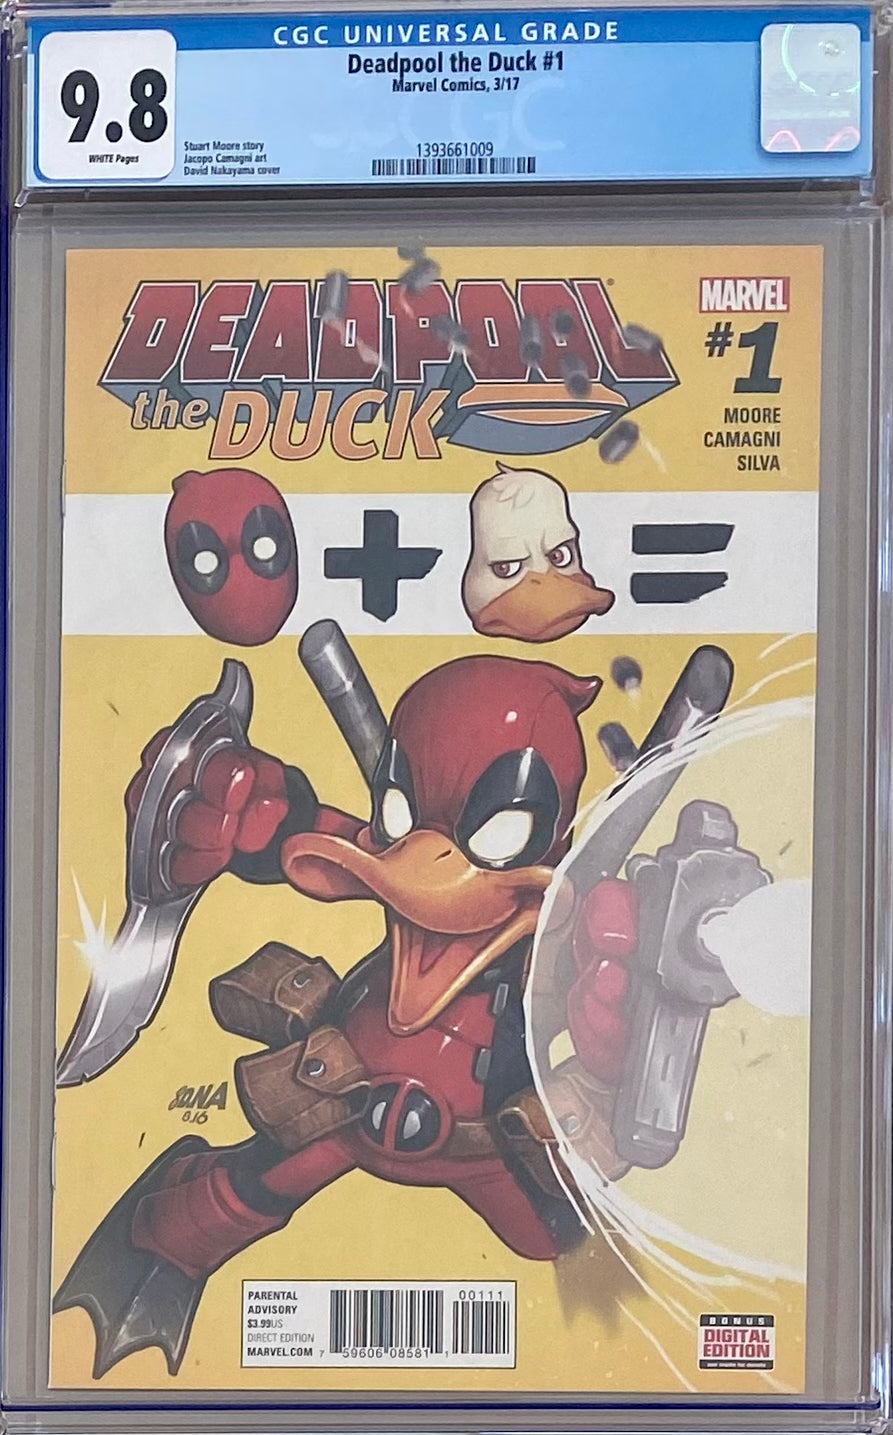 Deadpool the Duck #1 CGC 9.8